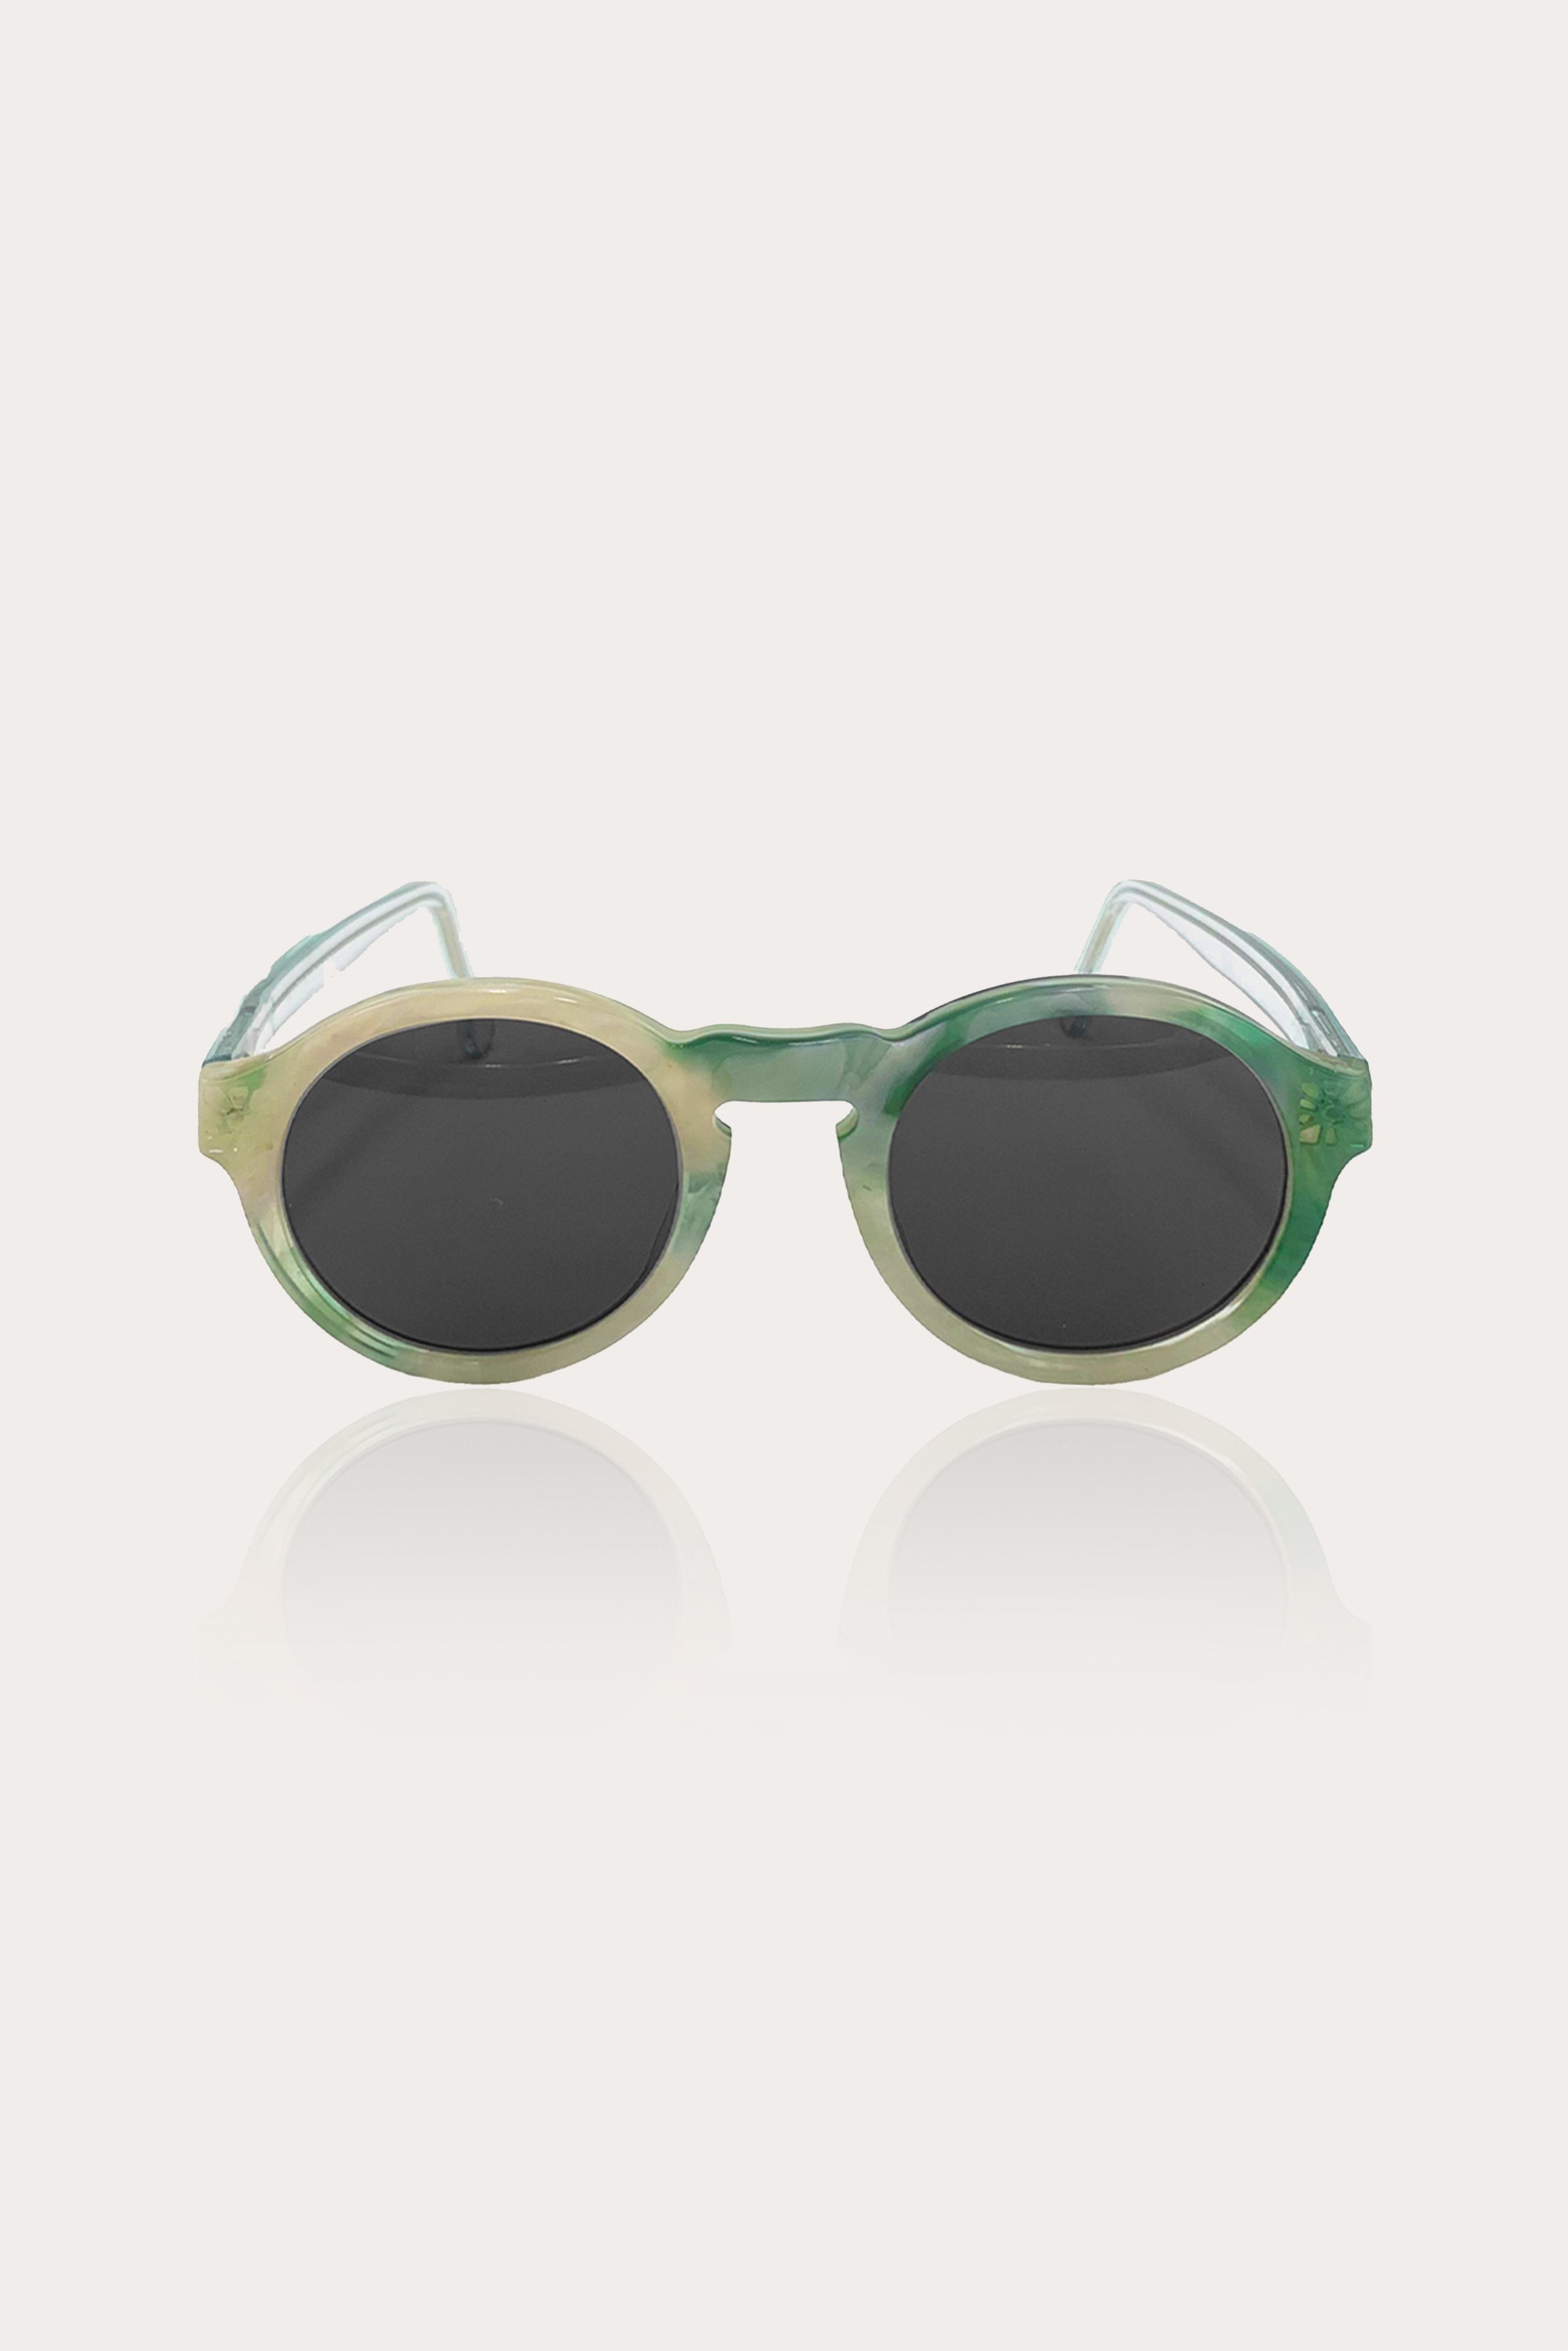 Retro Nude Square Polarized Sunglasses for Women Trendy 90s